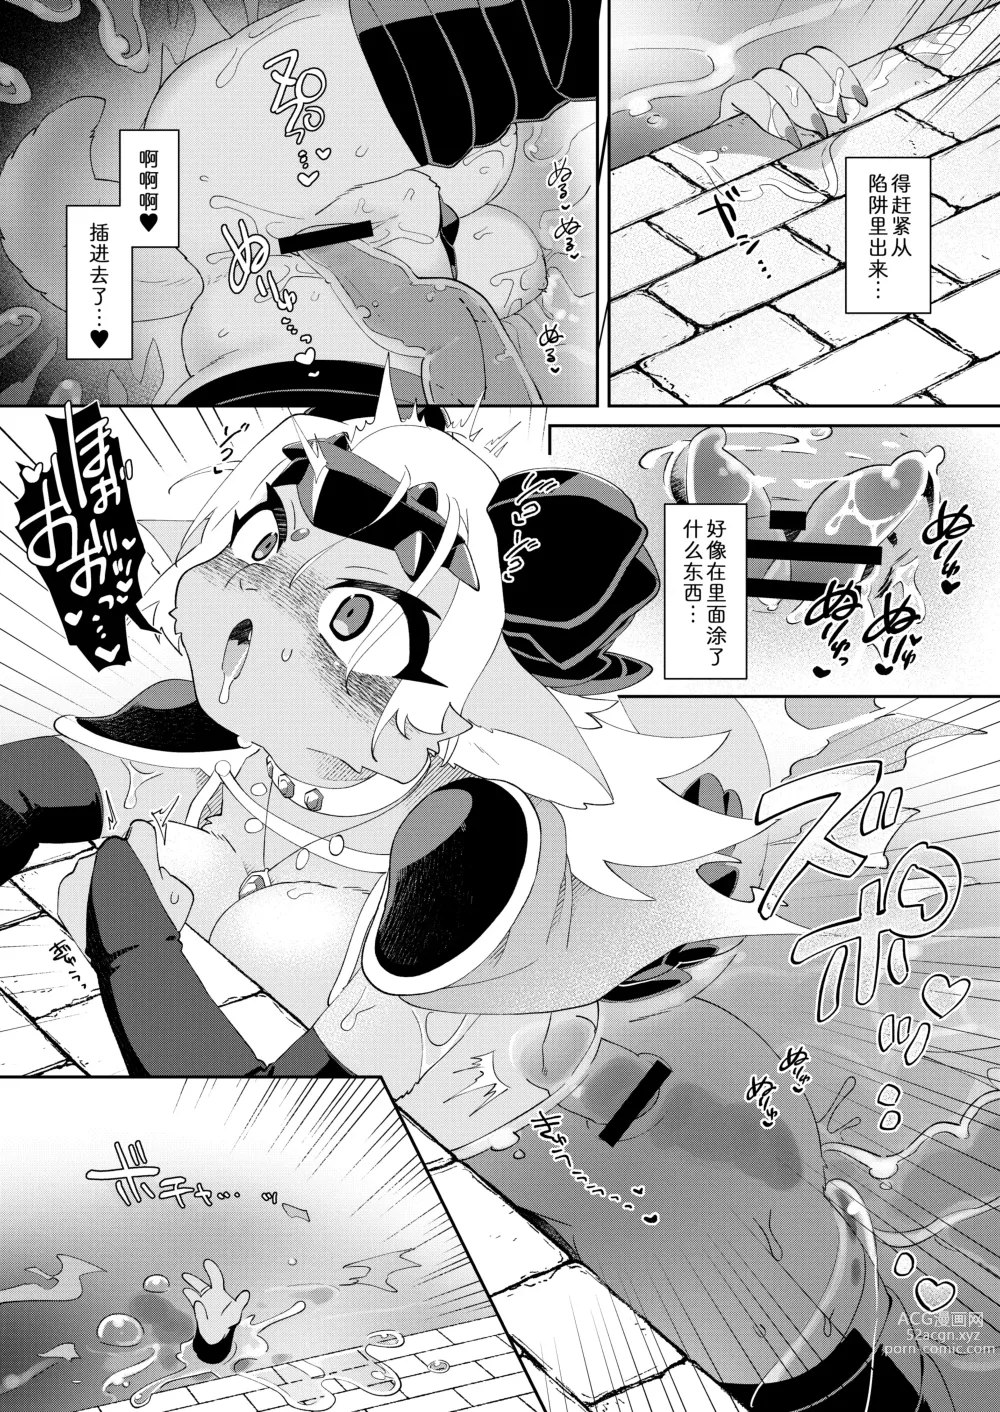 Page 8 of doujinshi 因为是魔王所以说色情迷宫什么的当然随便通关了